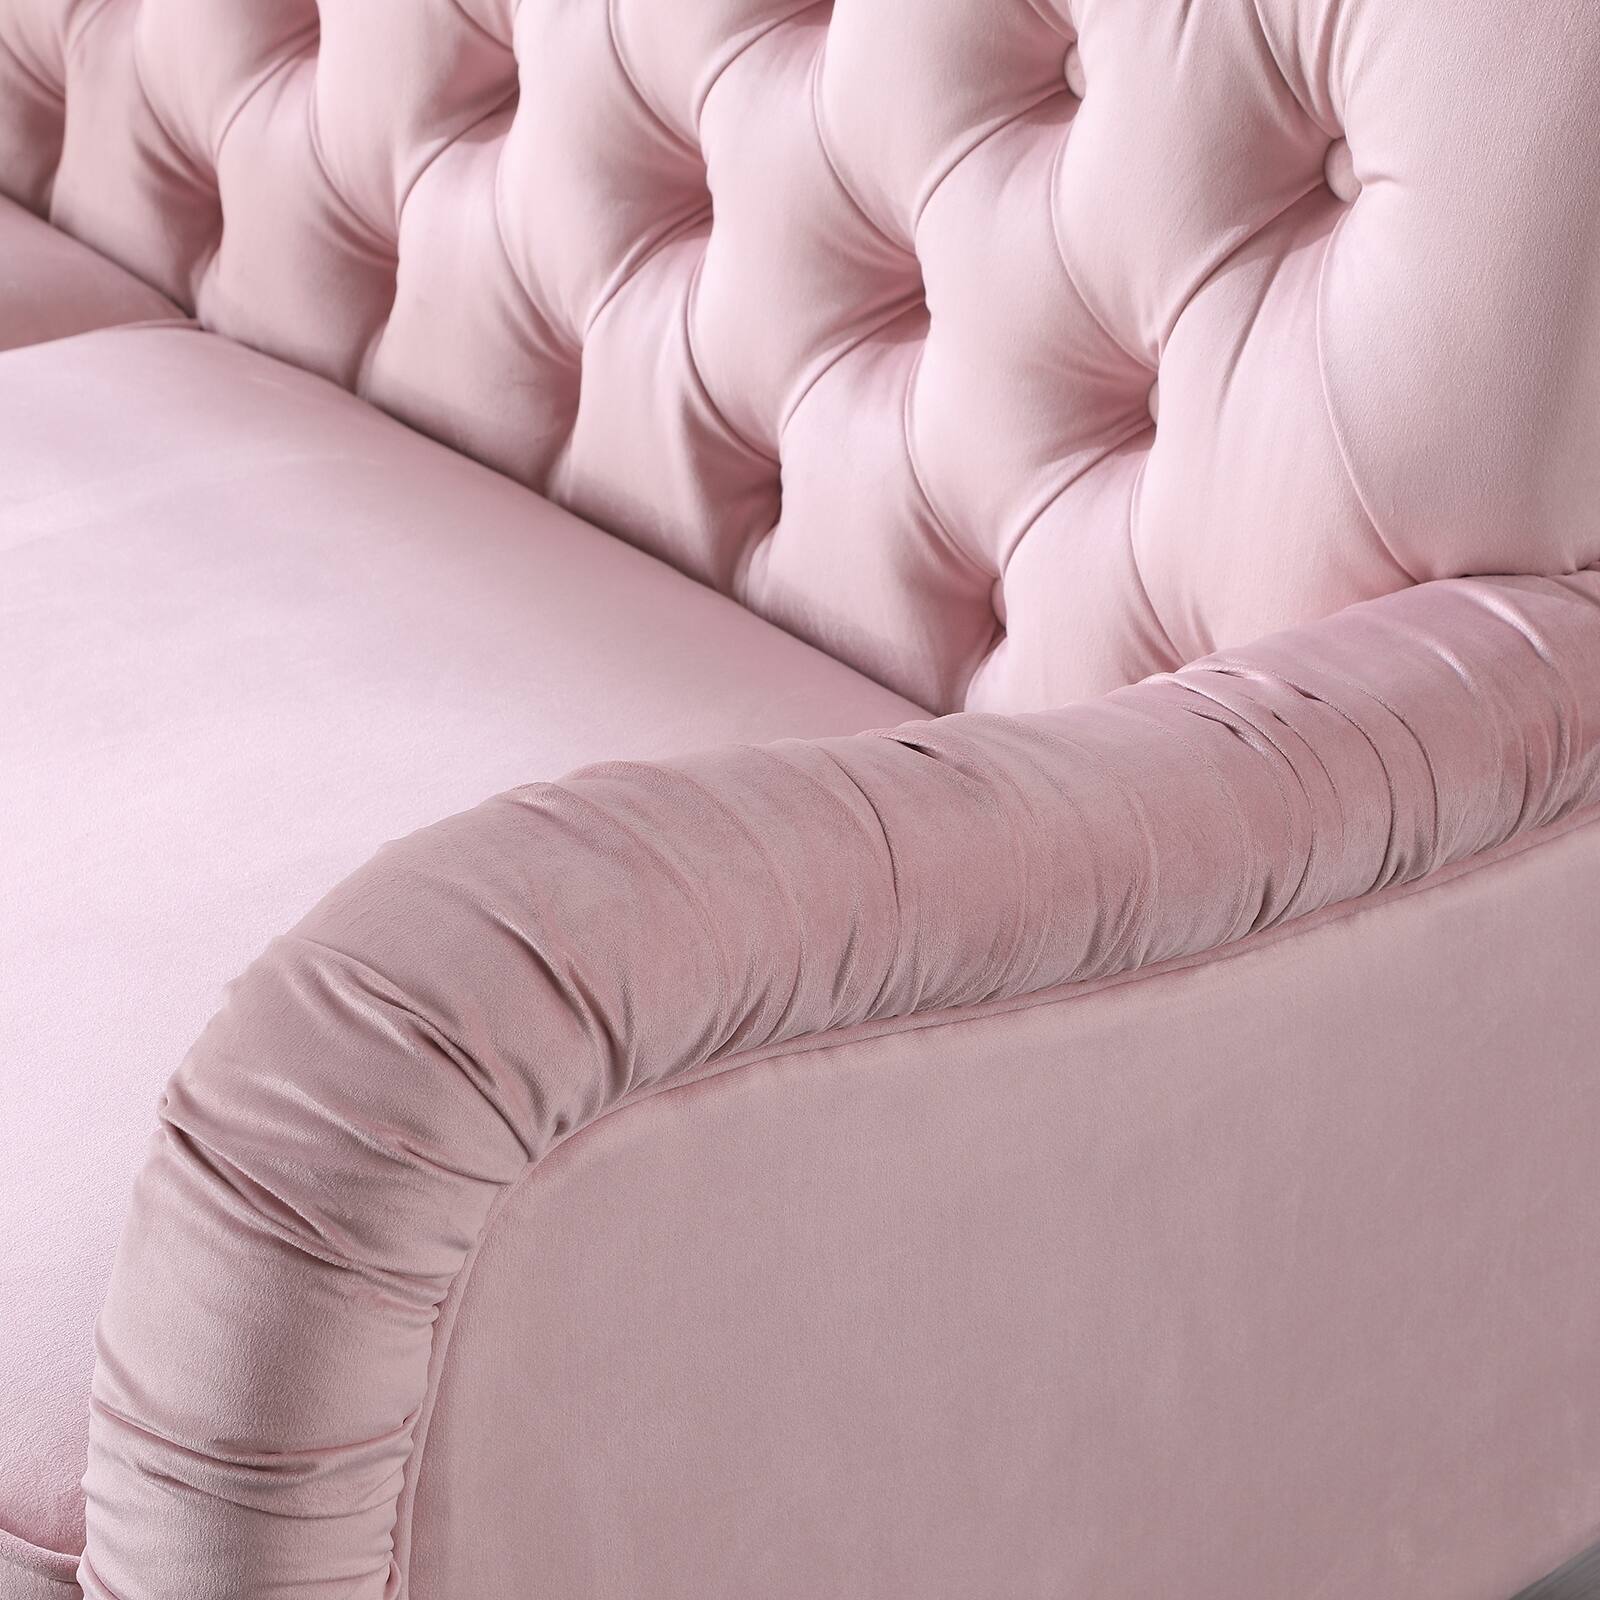 Chesterfield 2 Seater Sofa Modern Velvet Upholstered Loveseat, Lounge Couch